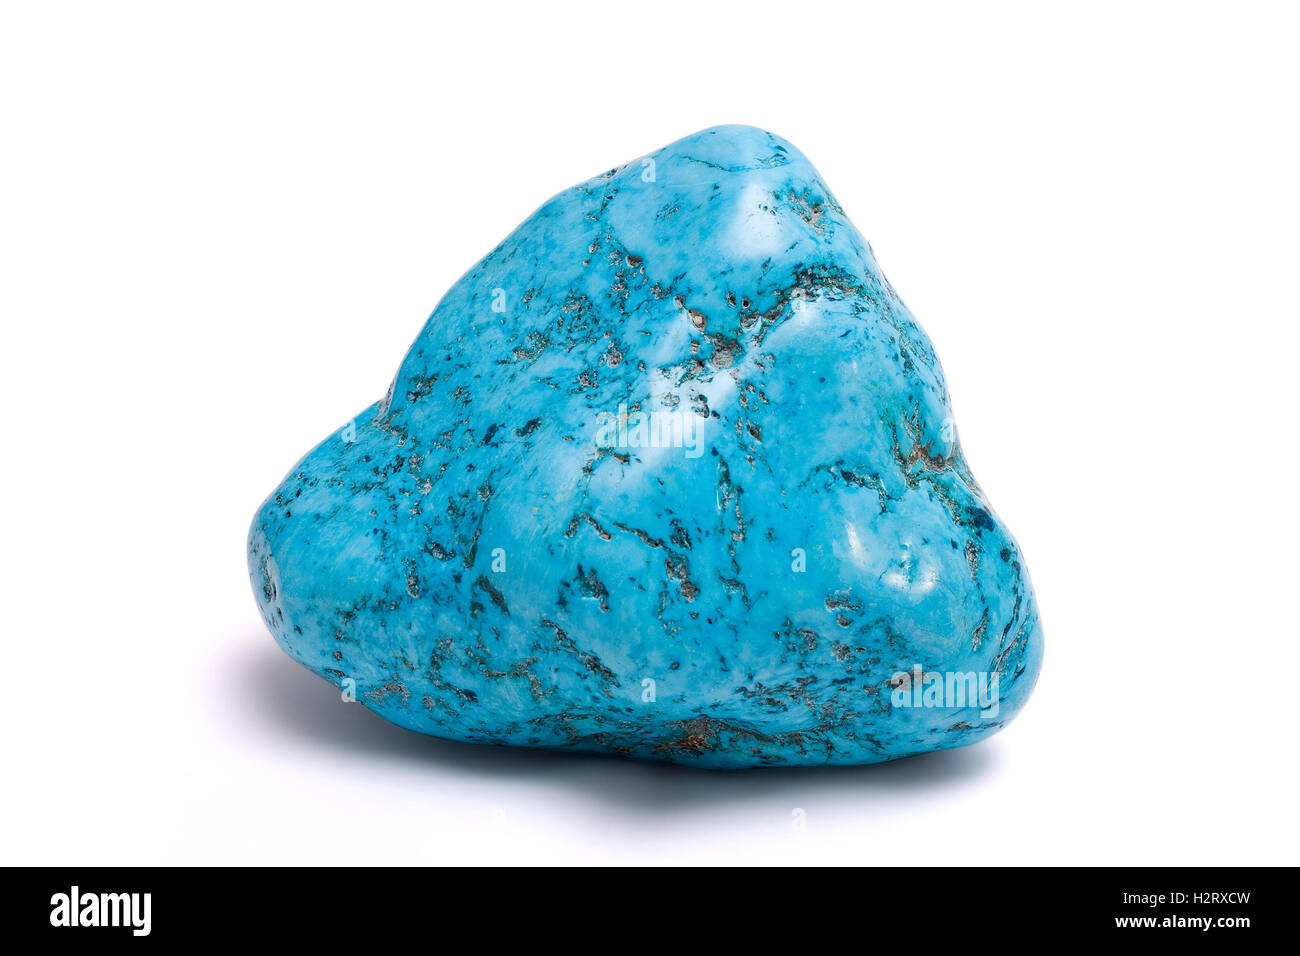 Pierre : Turquoise isolés montrant un plan macro ornement décoratif turquoise bleu minéral de pierre gemme semi-précieuse Banque D'Images